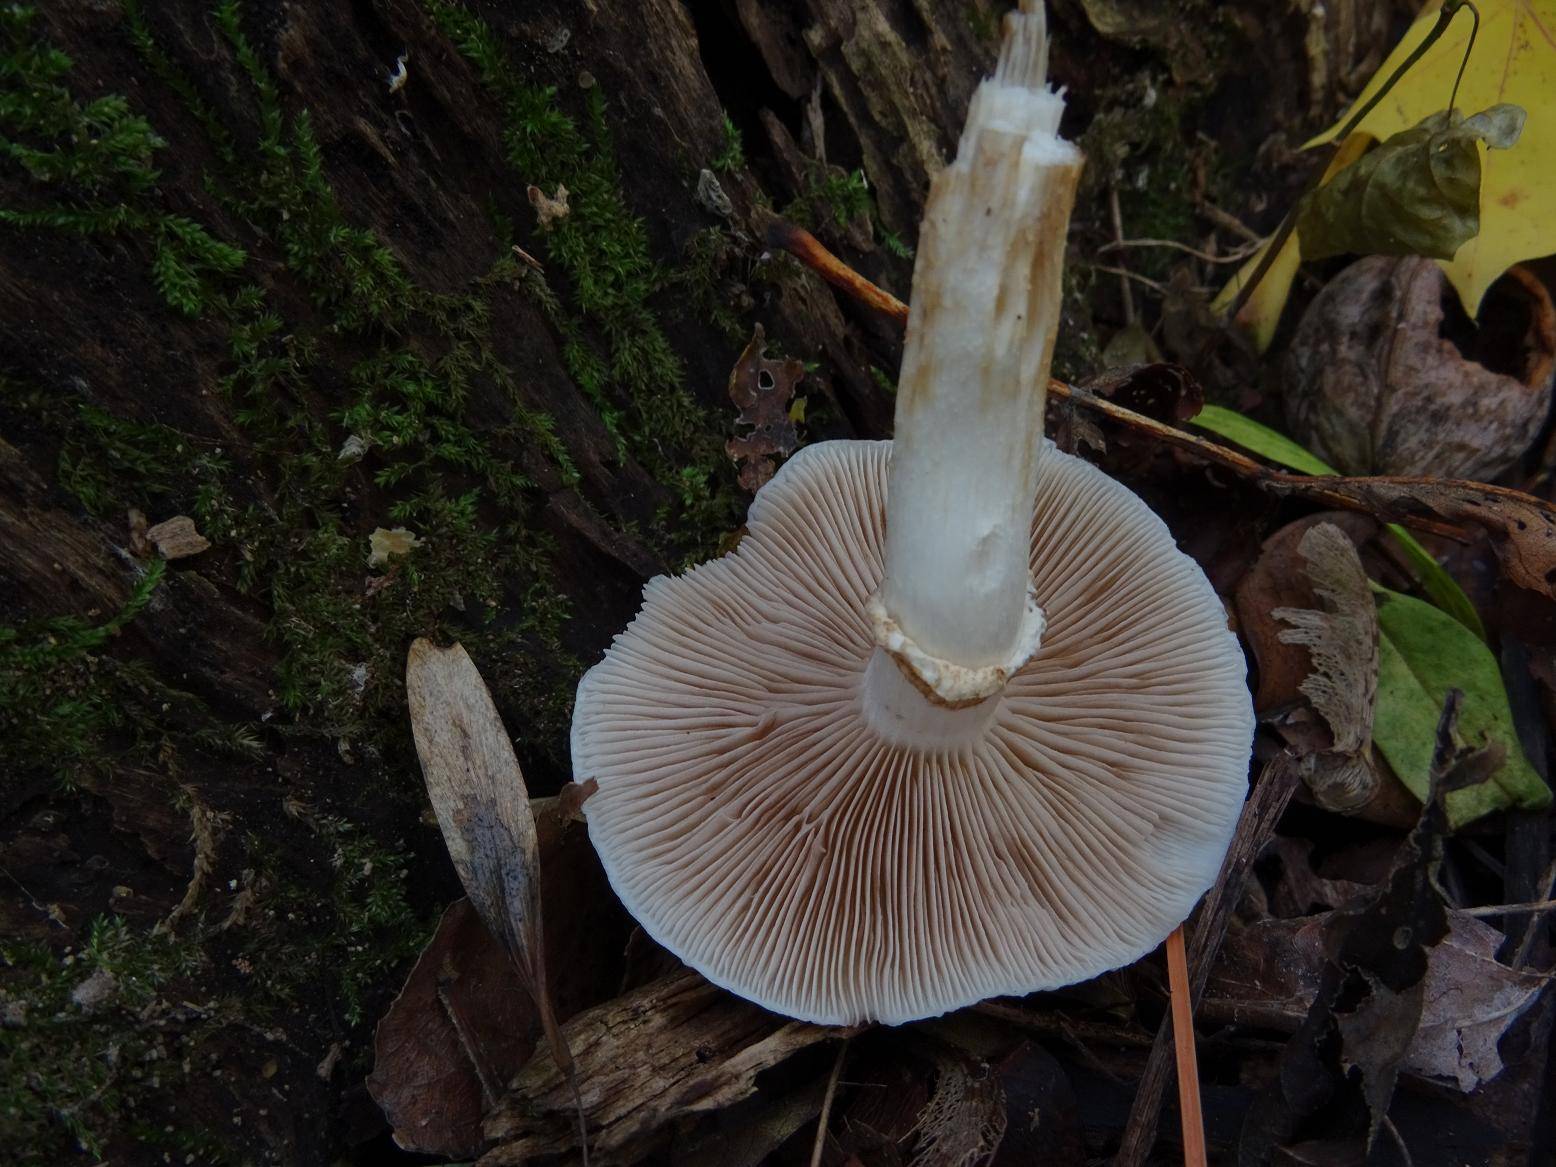 Зонтик пестрый, большой или высокий (macrolepiota procera): фото, описание и как приготовить съедобный гриб